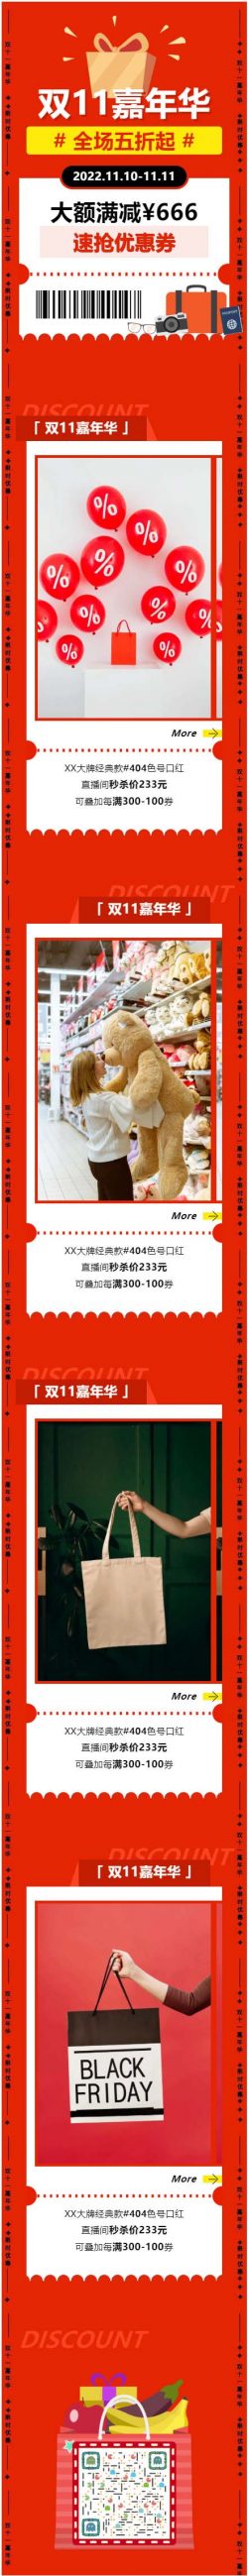 双十一购物狂欢节淘宝天猫京东微信图文设计推文模板推送文章素材